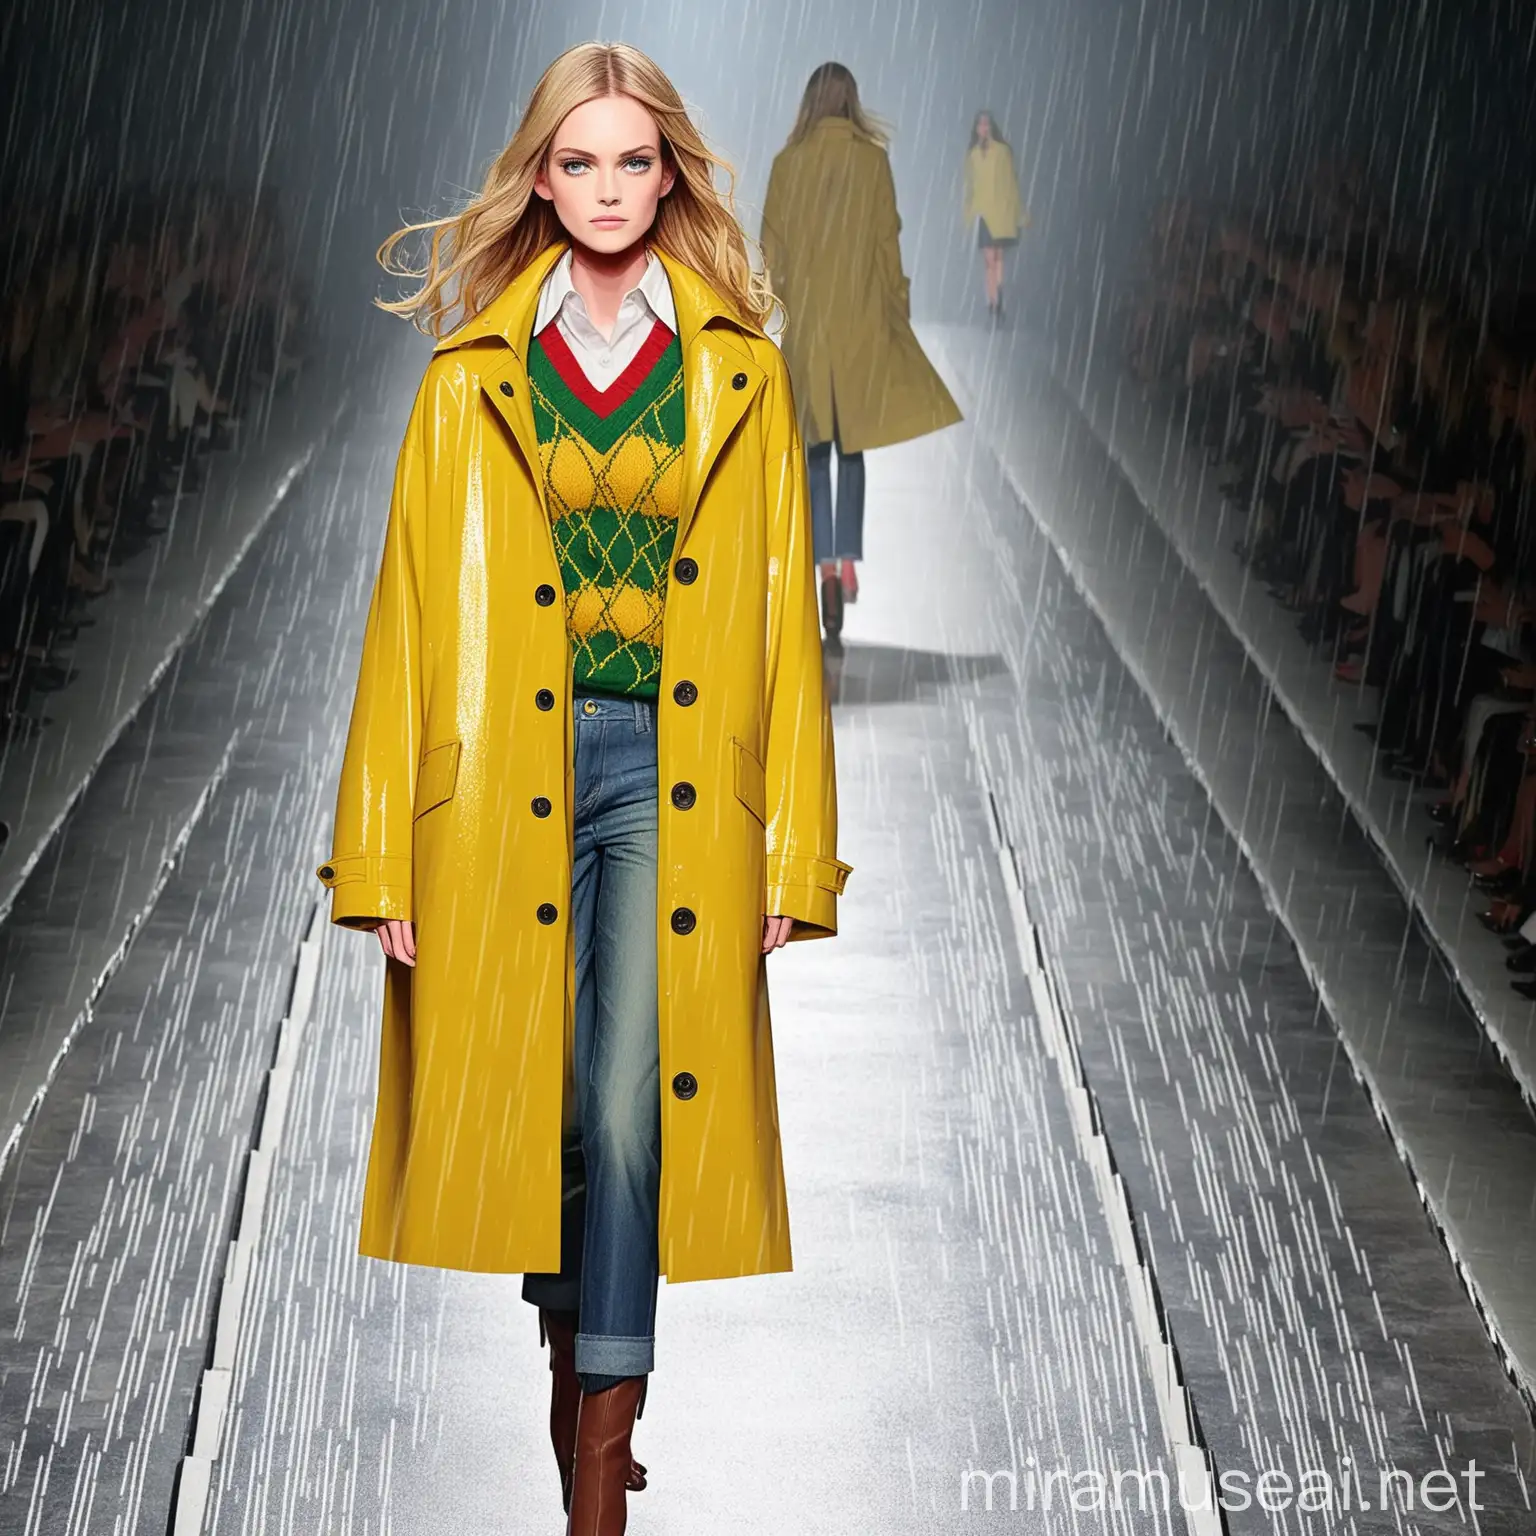 Classic Yellow Raincoat and Irish Sweater Fashion Runway